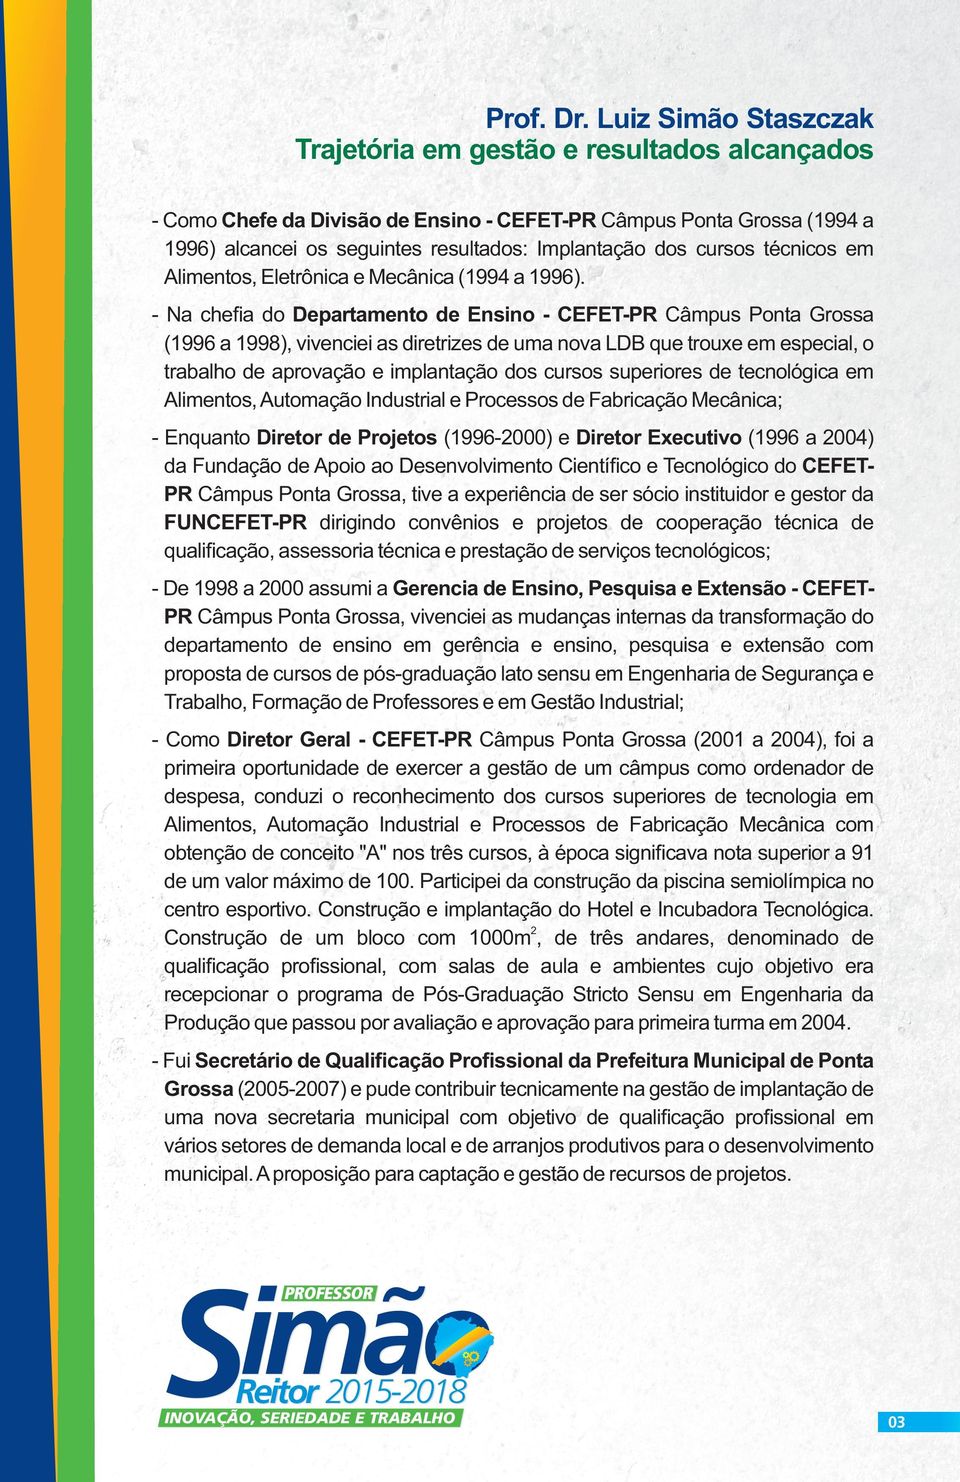 técnicos em Alimentos, Eletrônica e Mecânica (1994 a 1996).